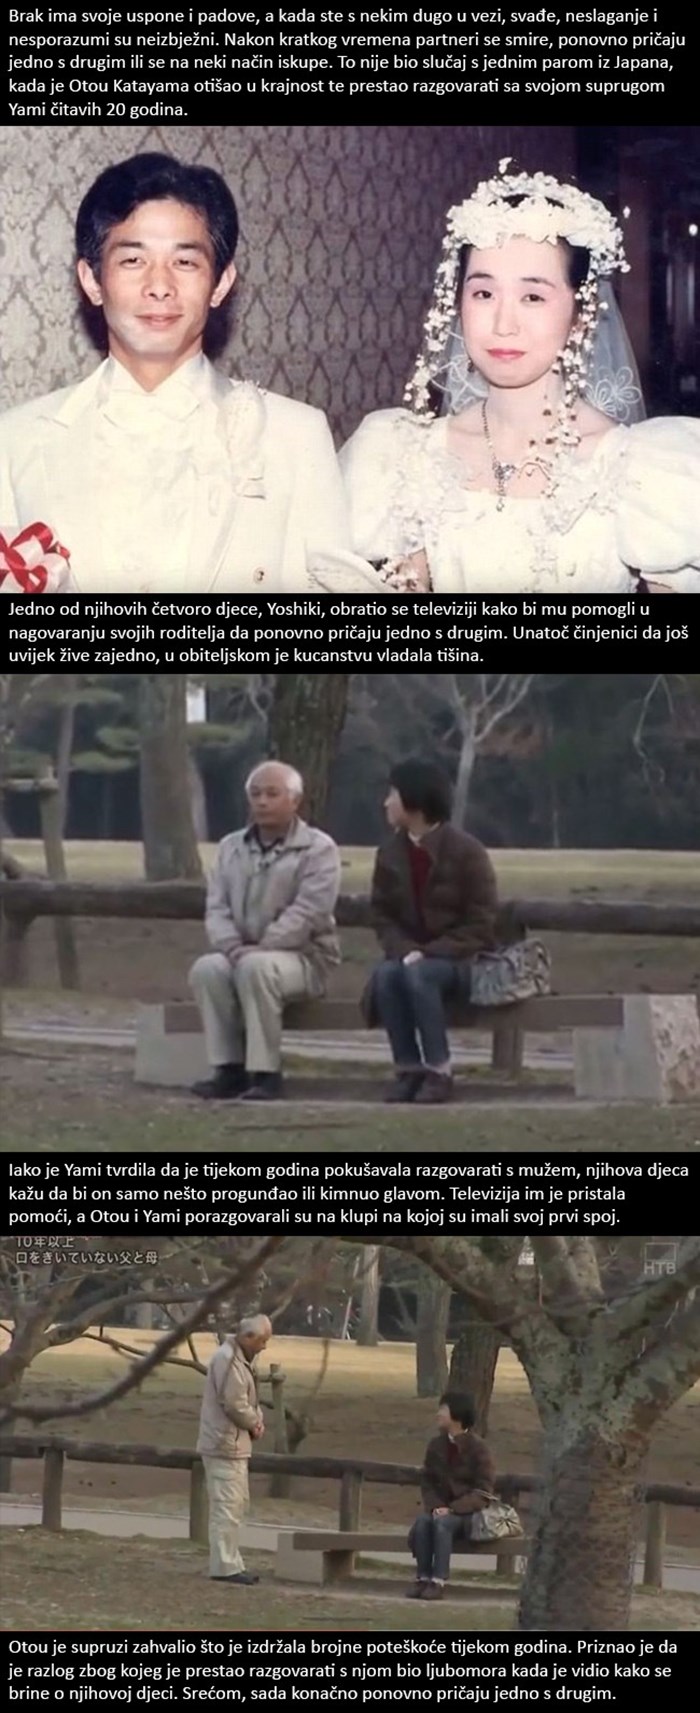 Nakon 20 godina šutnje, Japanac je počeo ponovno pričati sa svojom ženom!